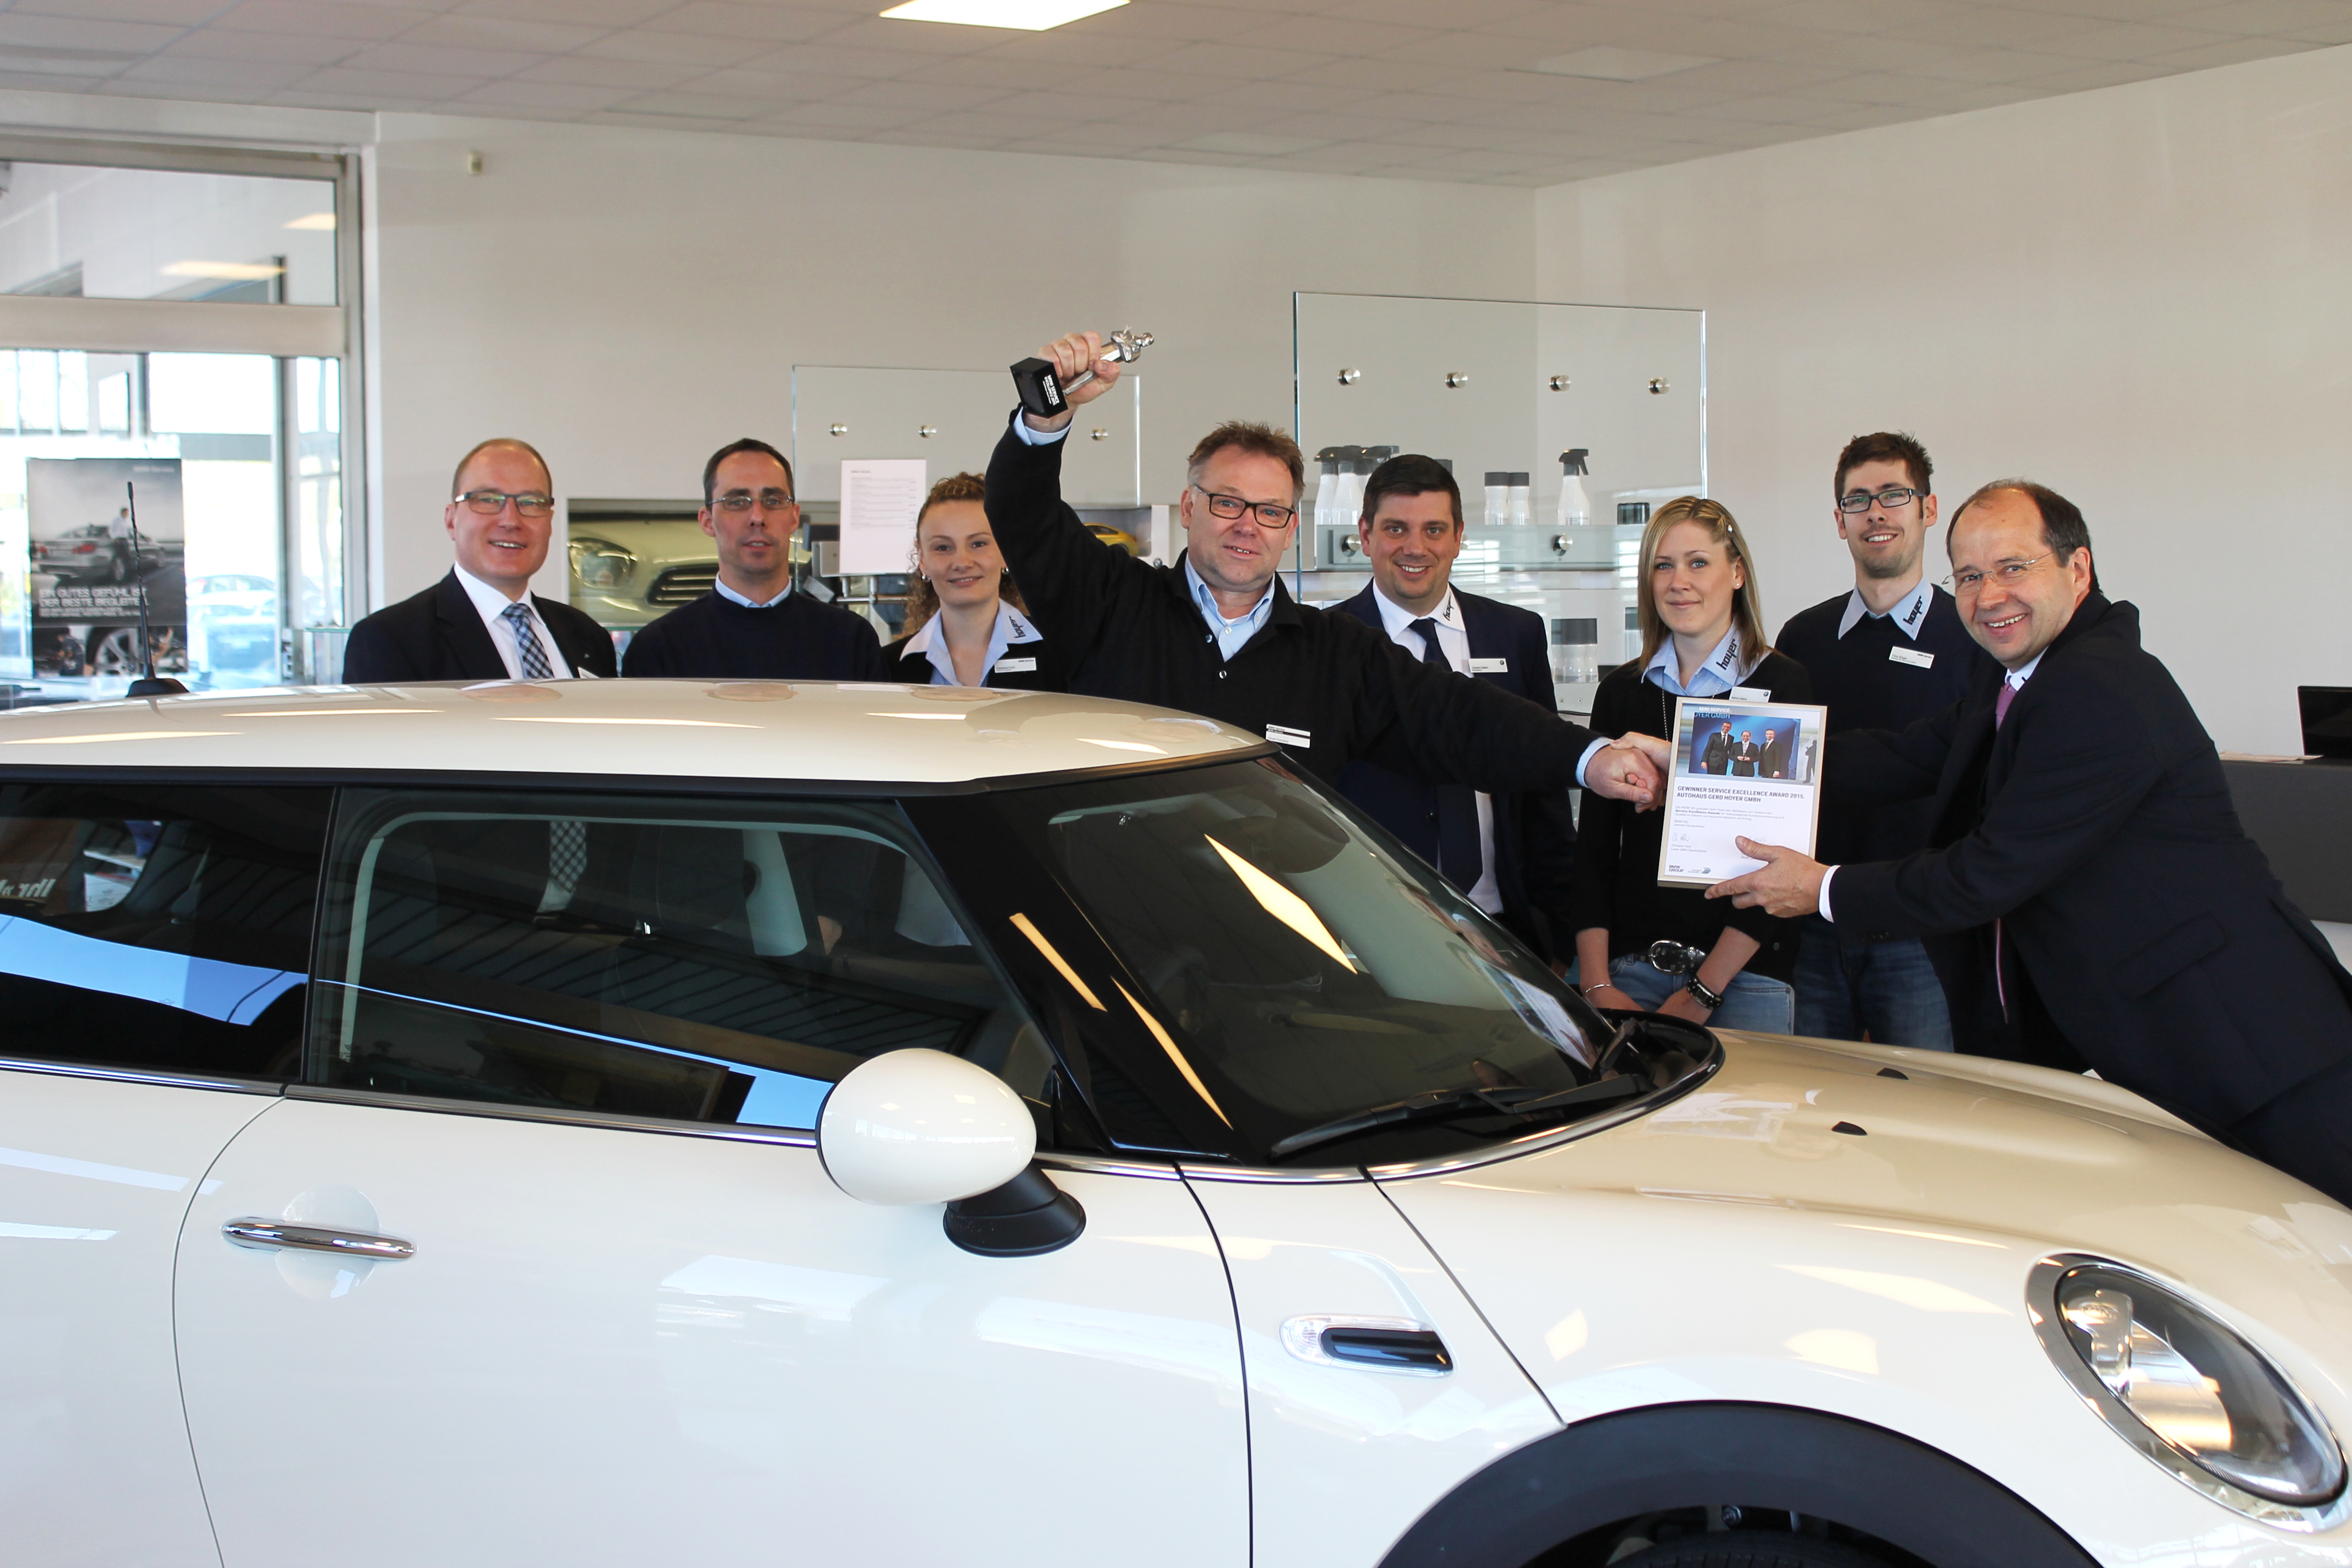 Autohaus Gerd Hoyer erhält Auszeichnung für hervorragende Kundenorientierung